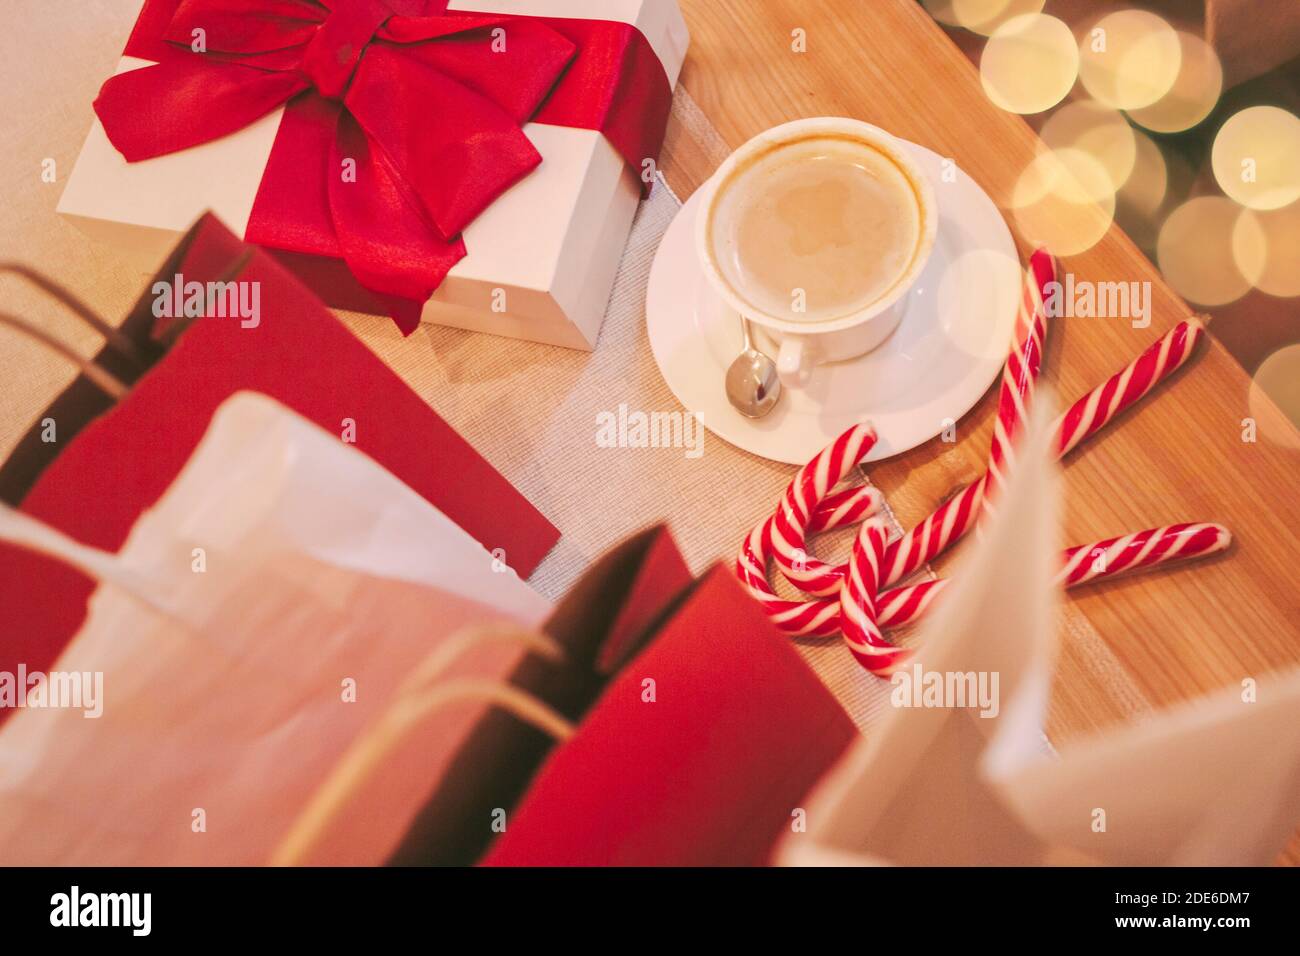 Vue de dessus des boîtes-cadeaux de fête de Noël et des sacs en papier sur une table en bois dans le café. Présente avec ruban rouge, café, bonbons de canne, sacs à provisions. Banque D'Images